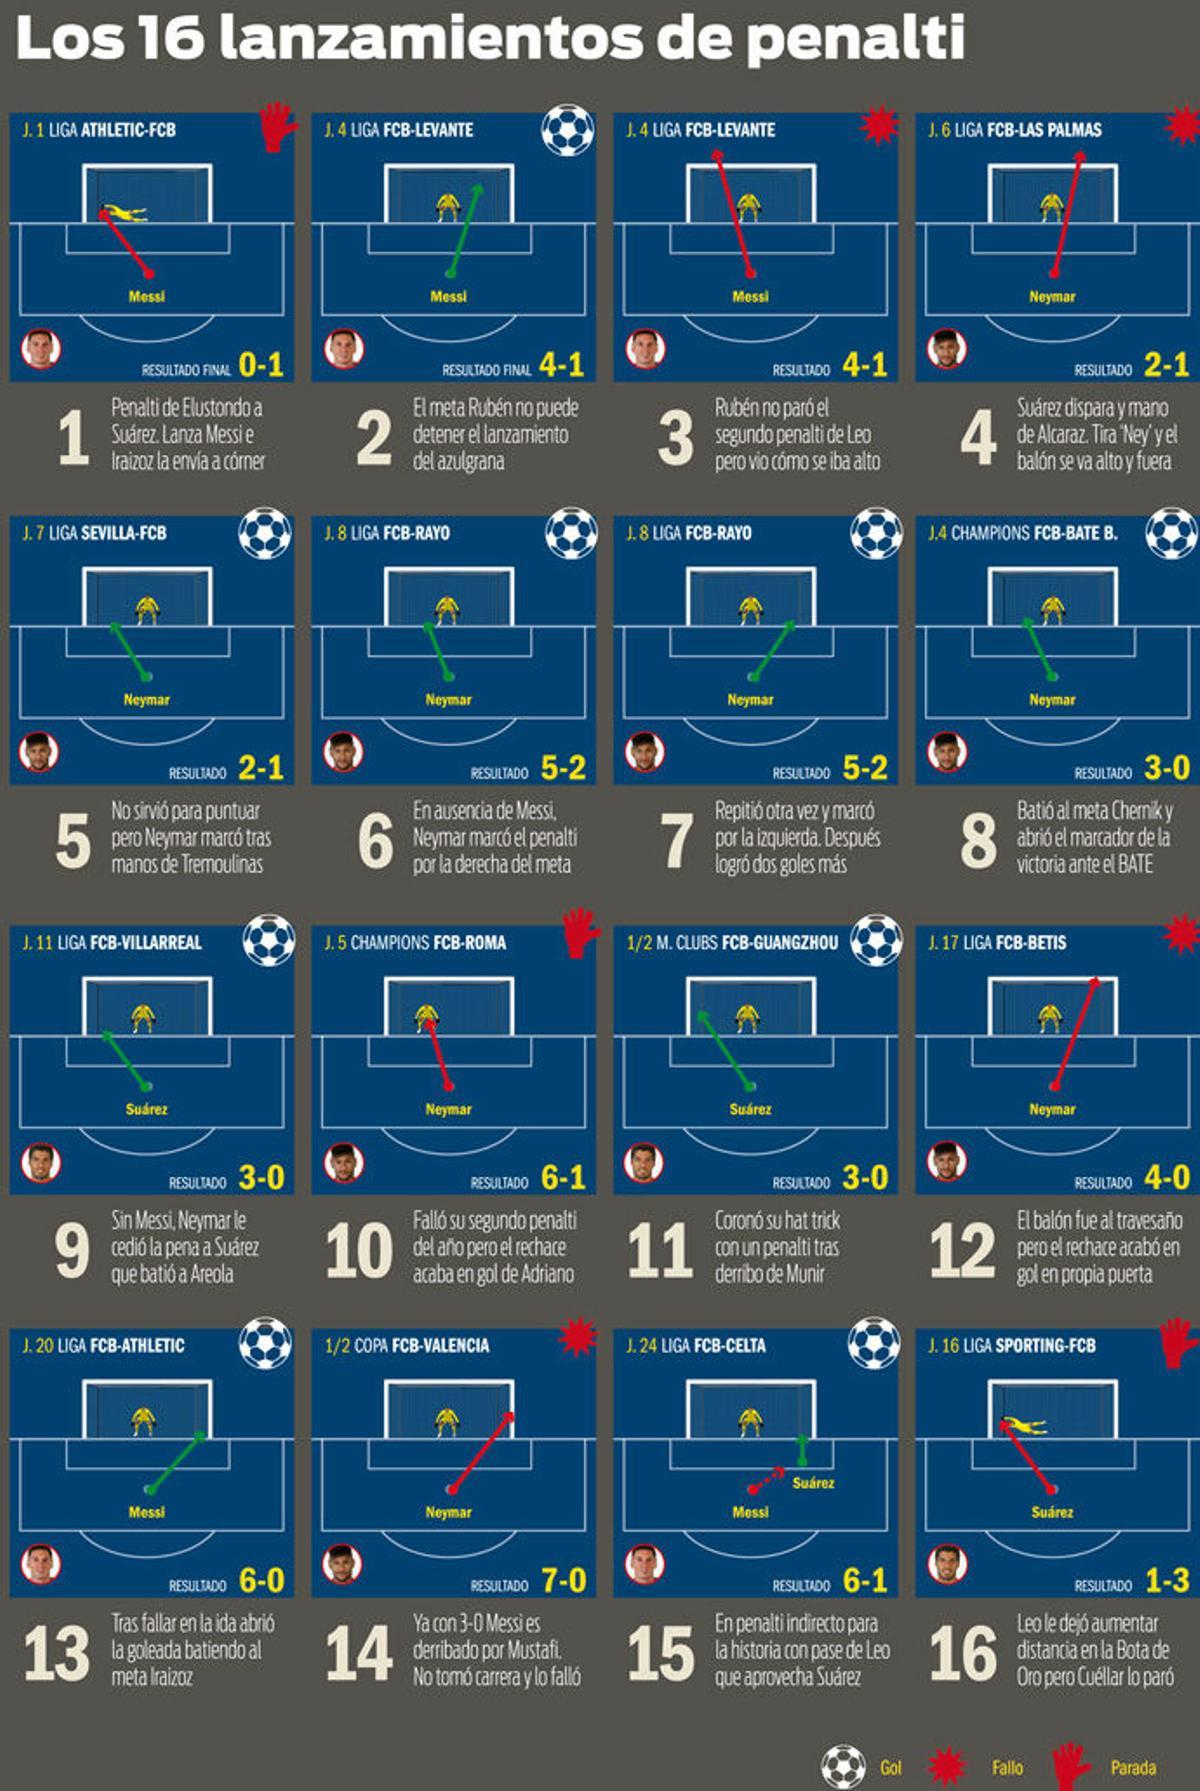 Los 16 penaltis del Barça esta temporada